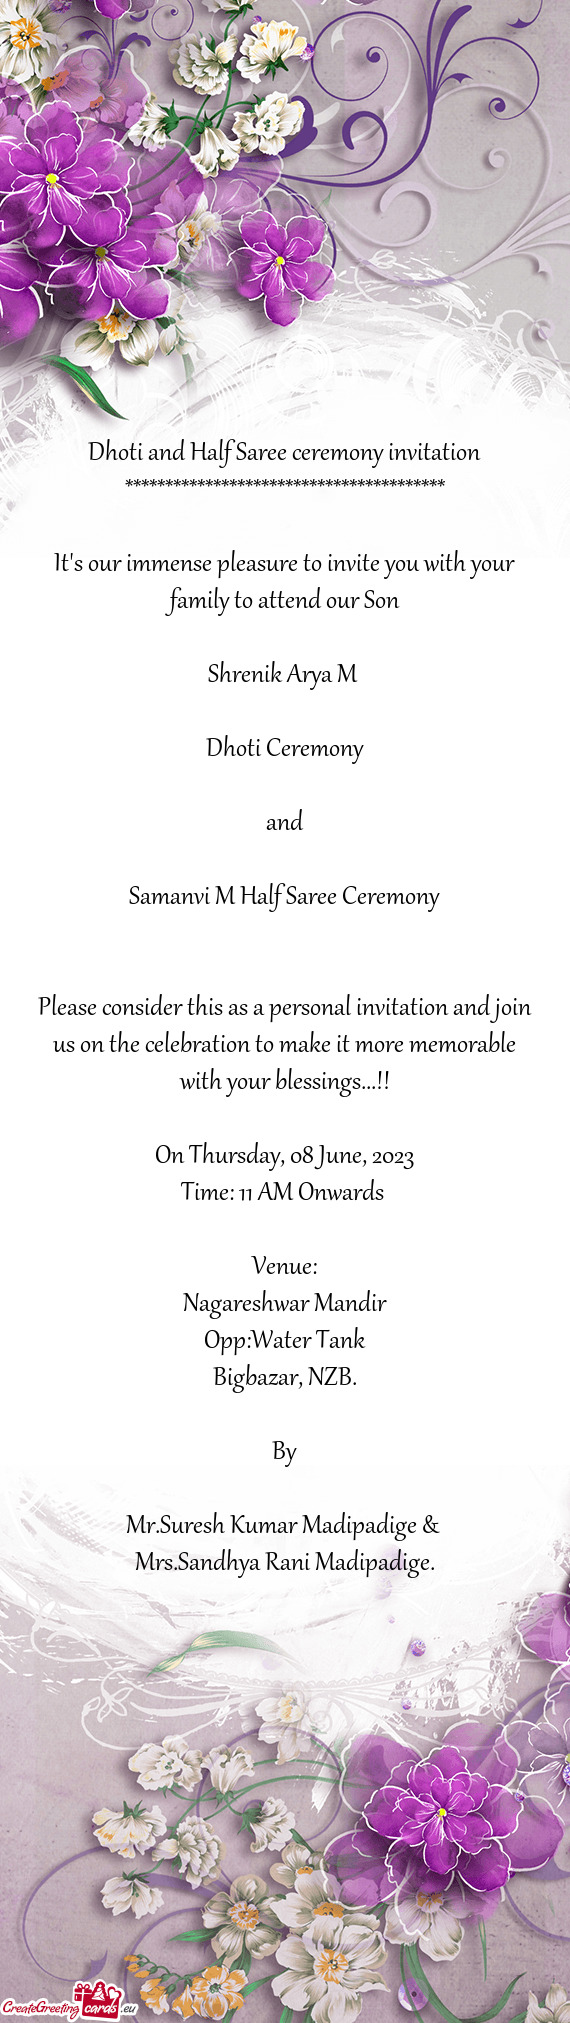 Samanvi M Half Saree Ceremony